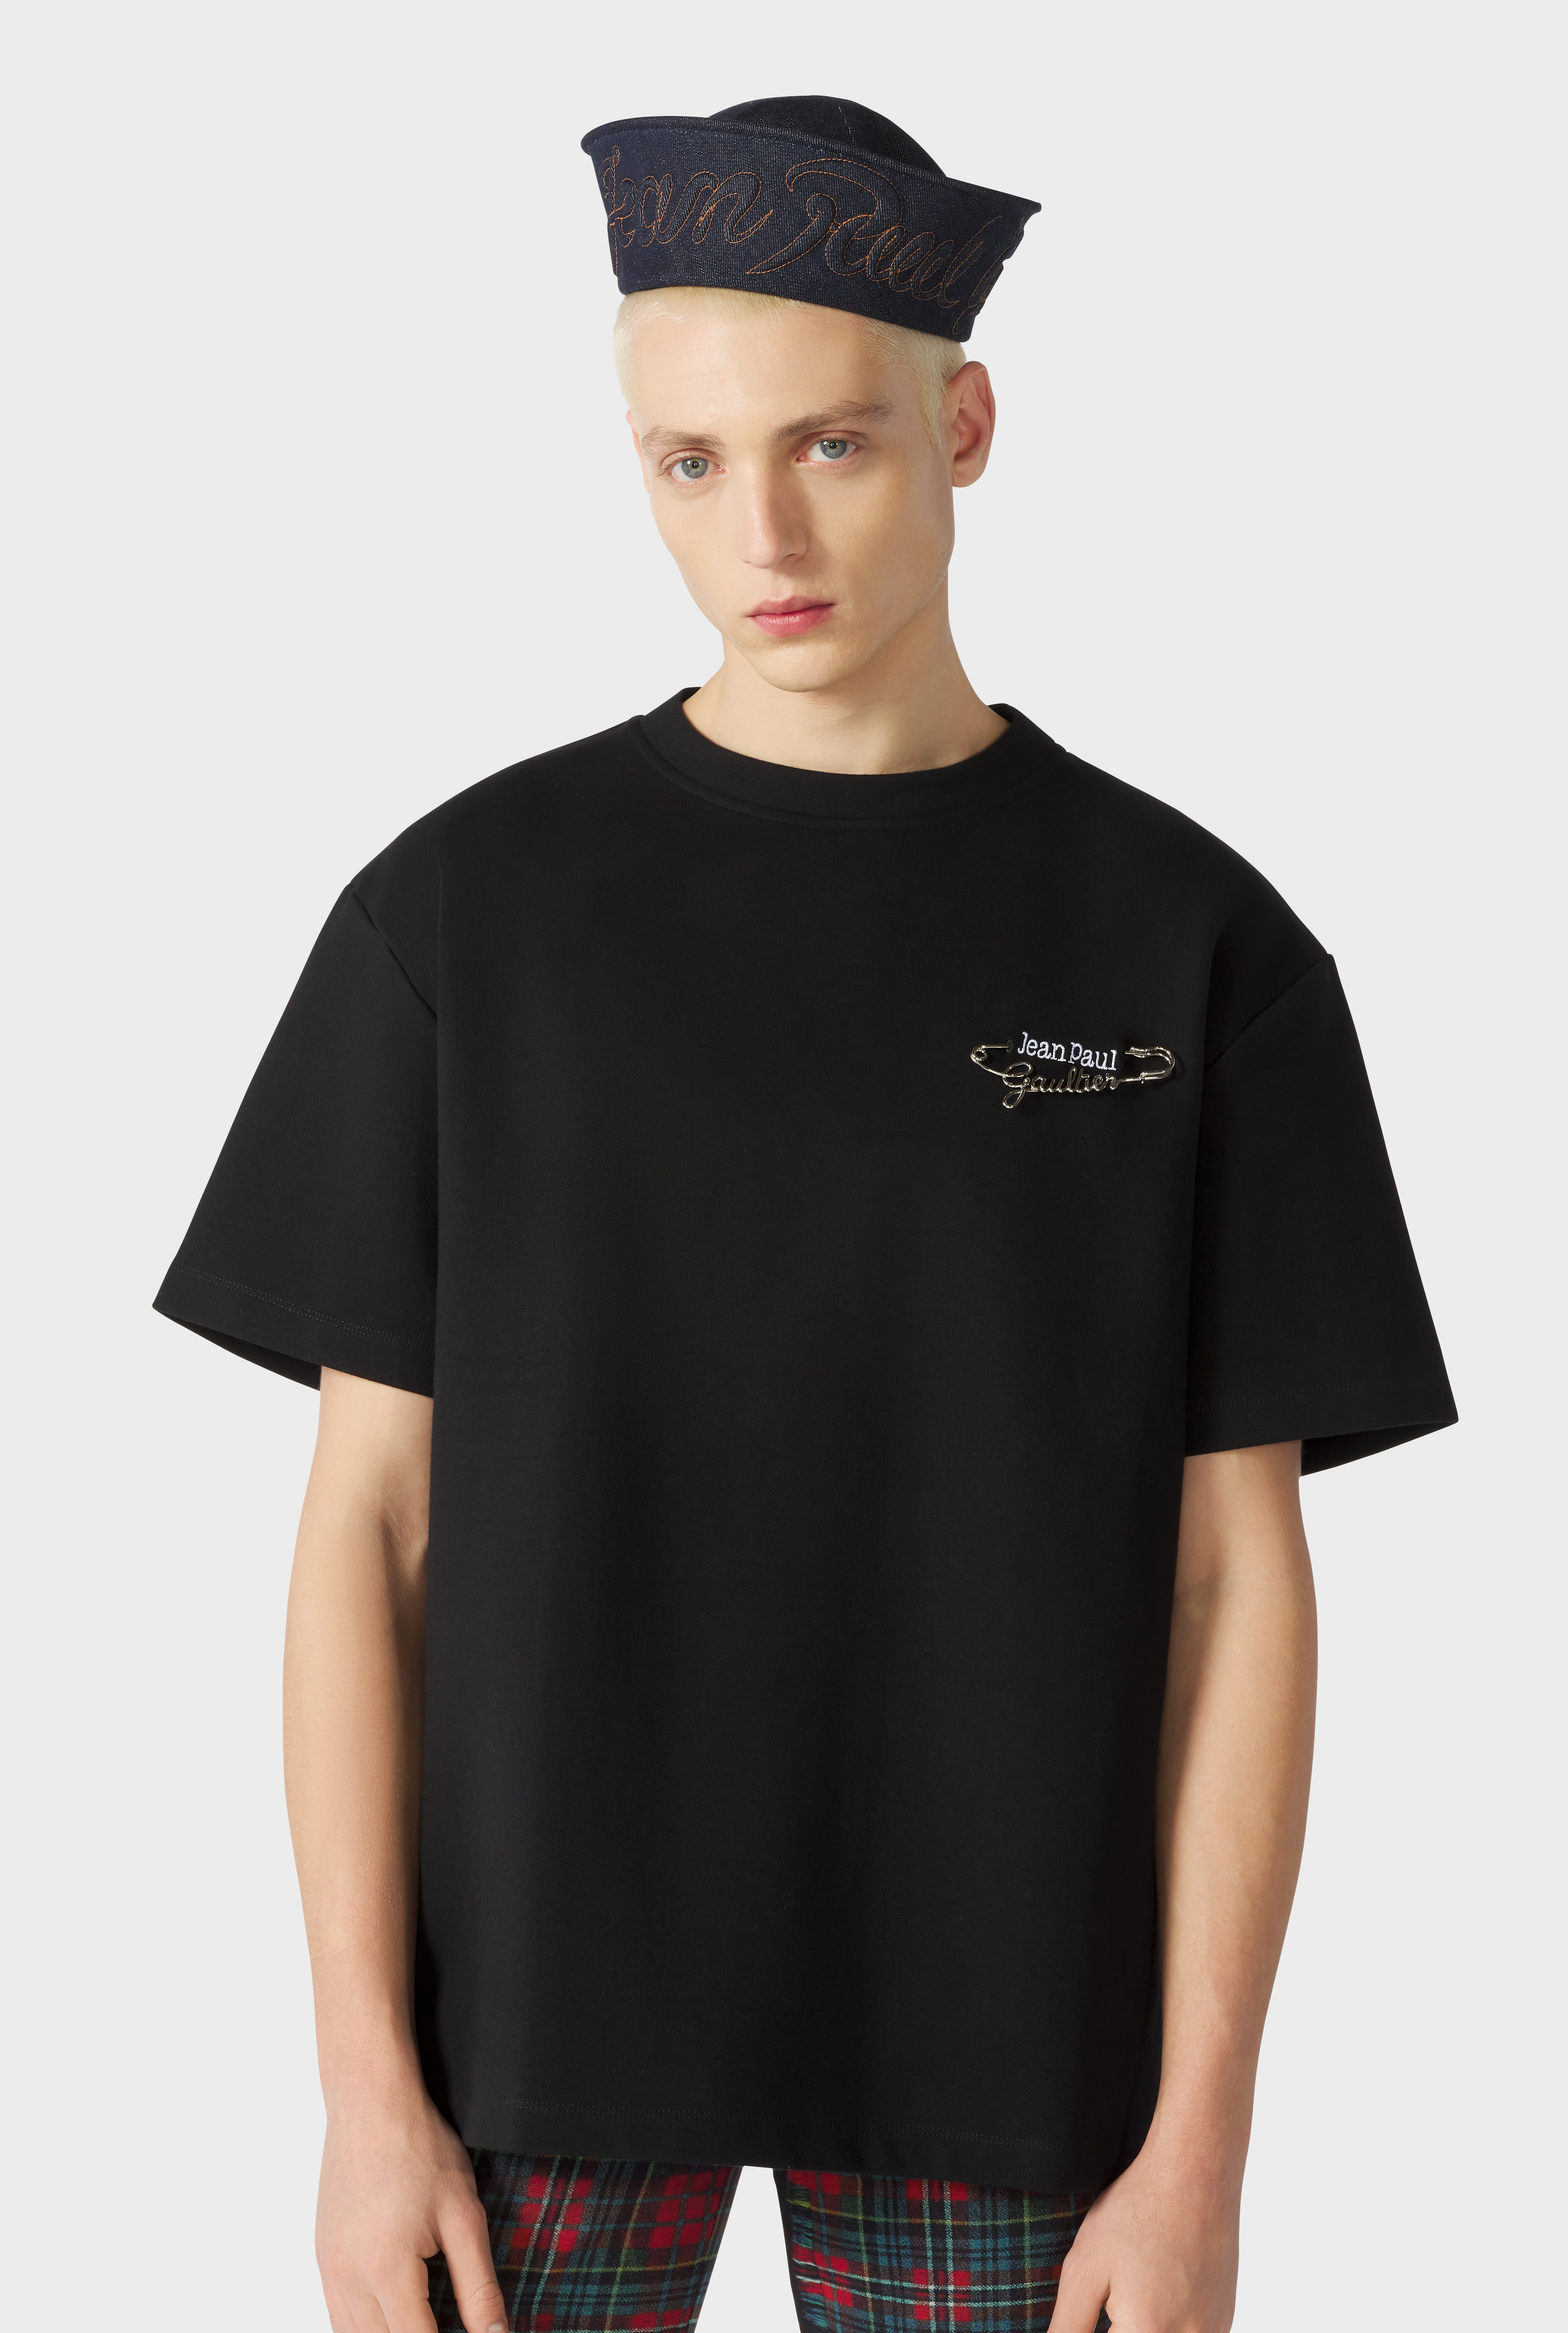 Jean Paul Gaultier - Jean Paul Gaultier | The Black Brooch T-Shirt